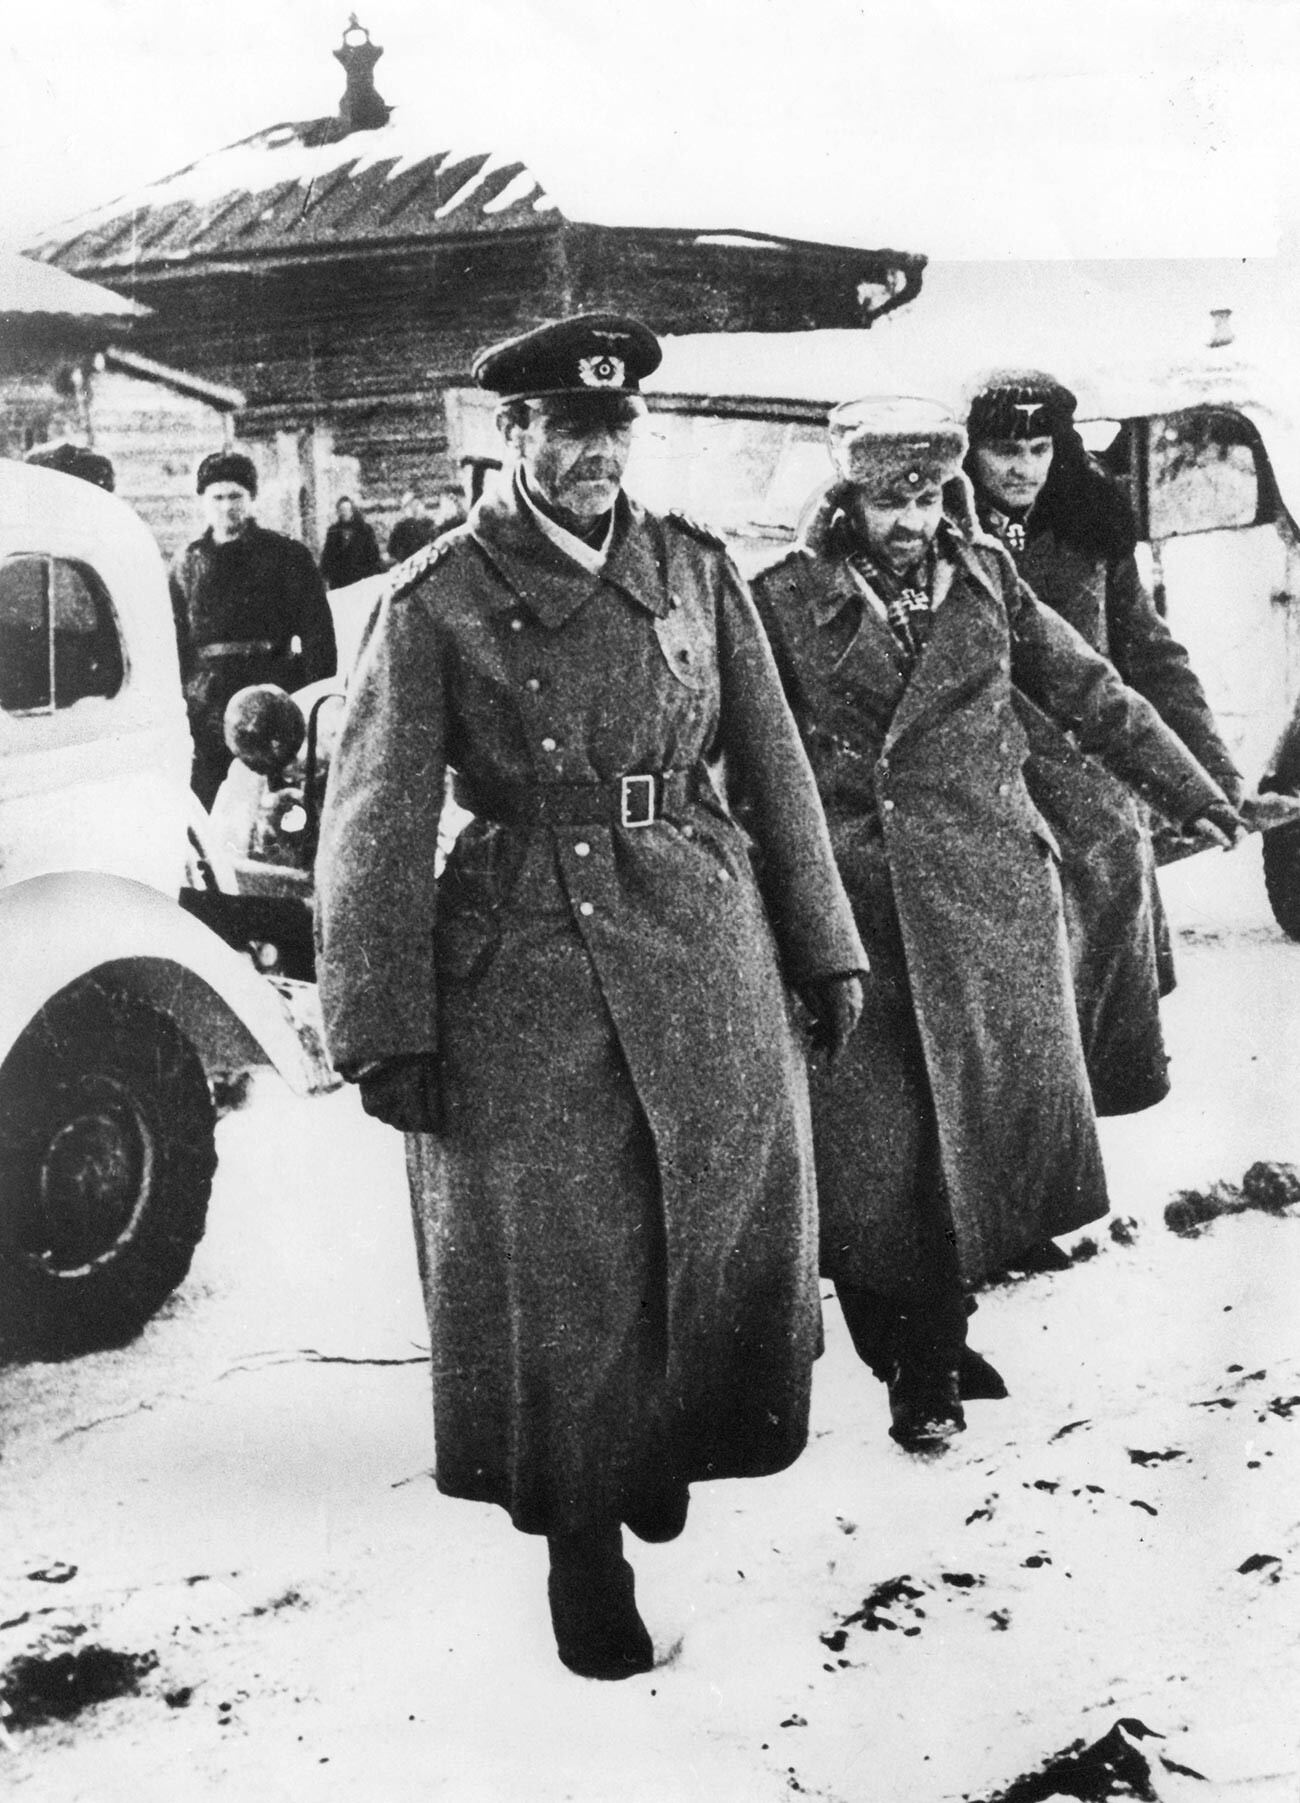 Friedrich Paulus capturado por el Ejército Rojo durante la batalla de Stalingrado, Unión Soviética, 1943.
